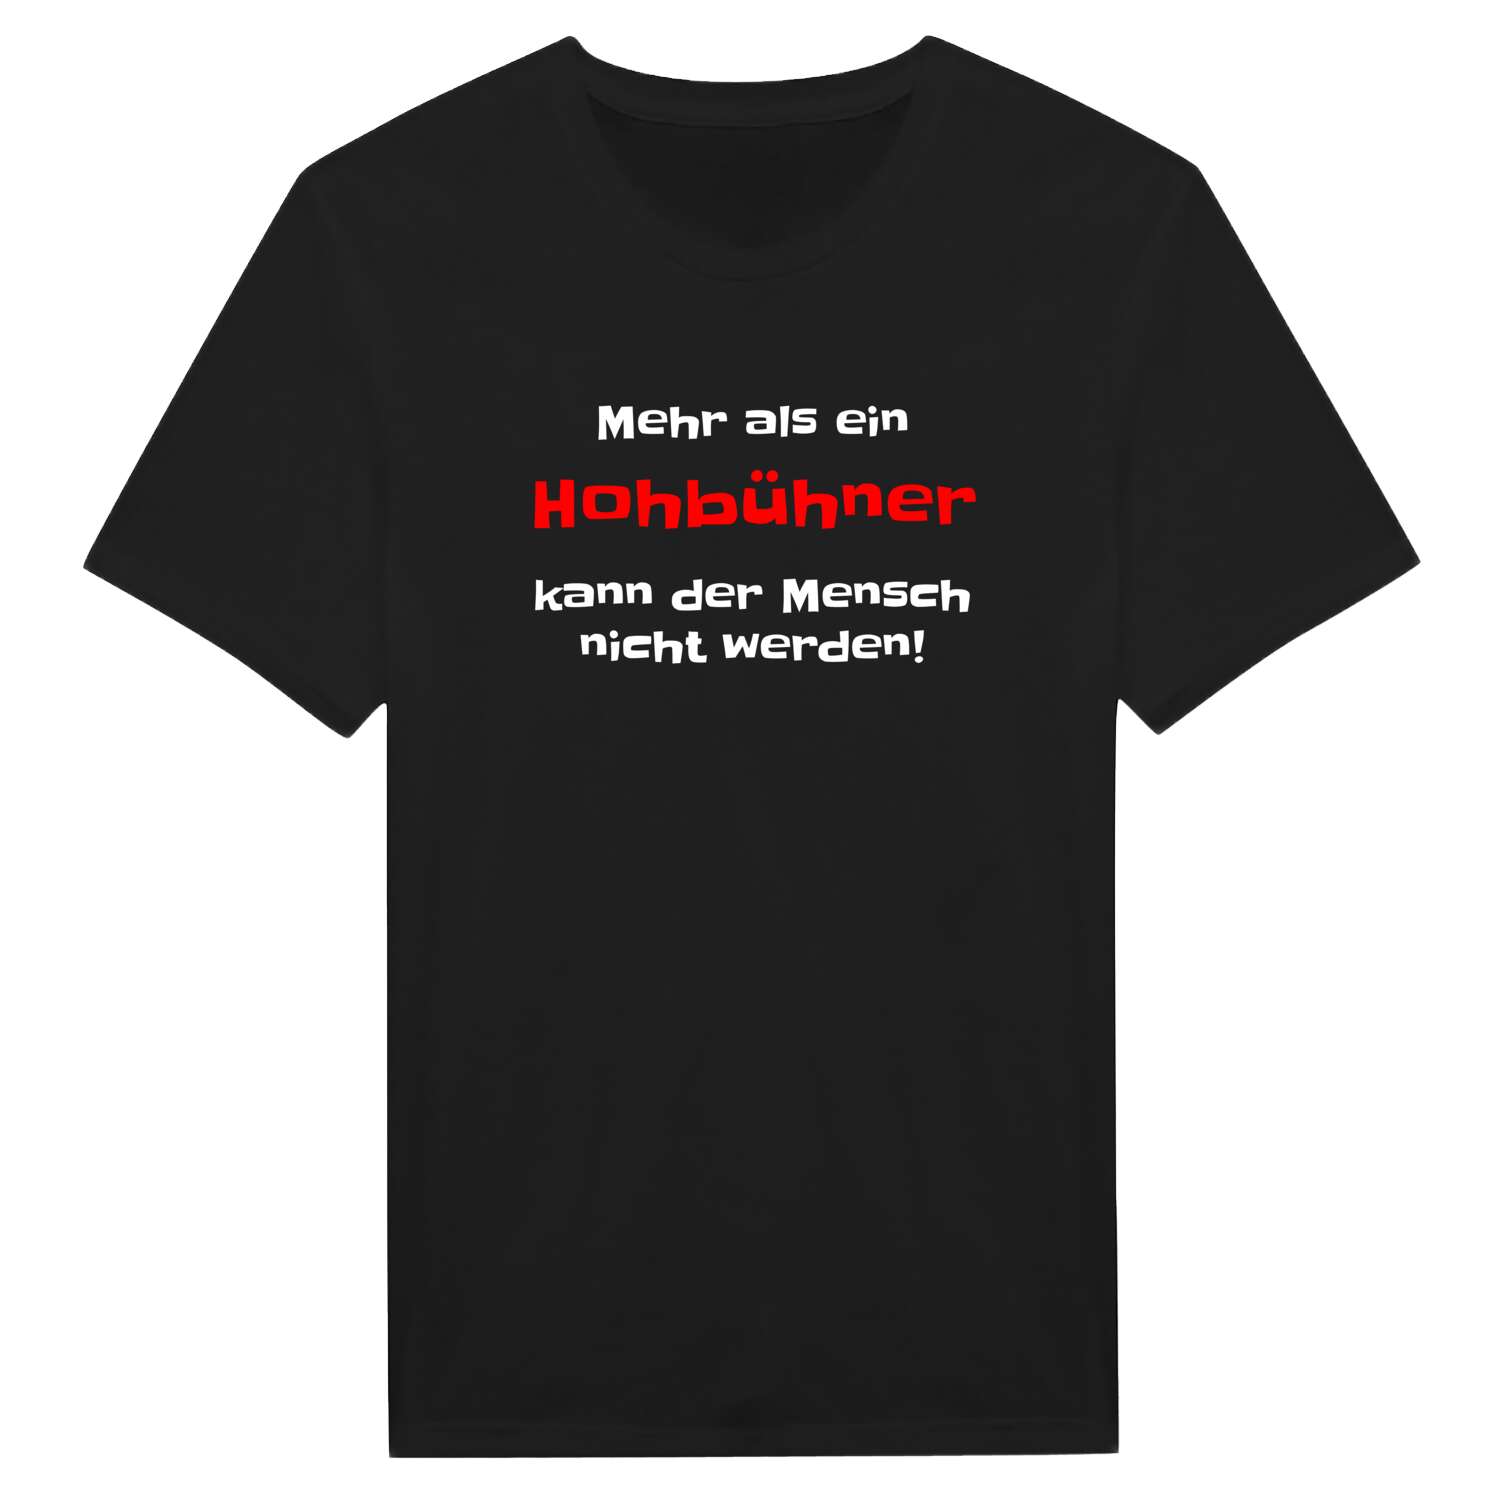 Hohbühn T-Shirt »Mehr als ein«